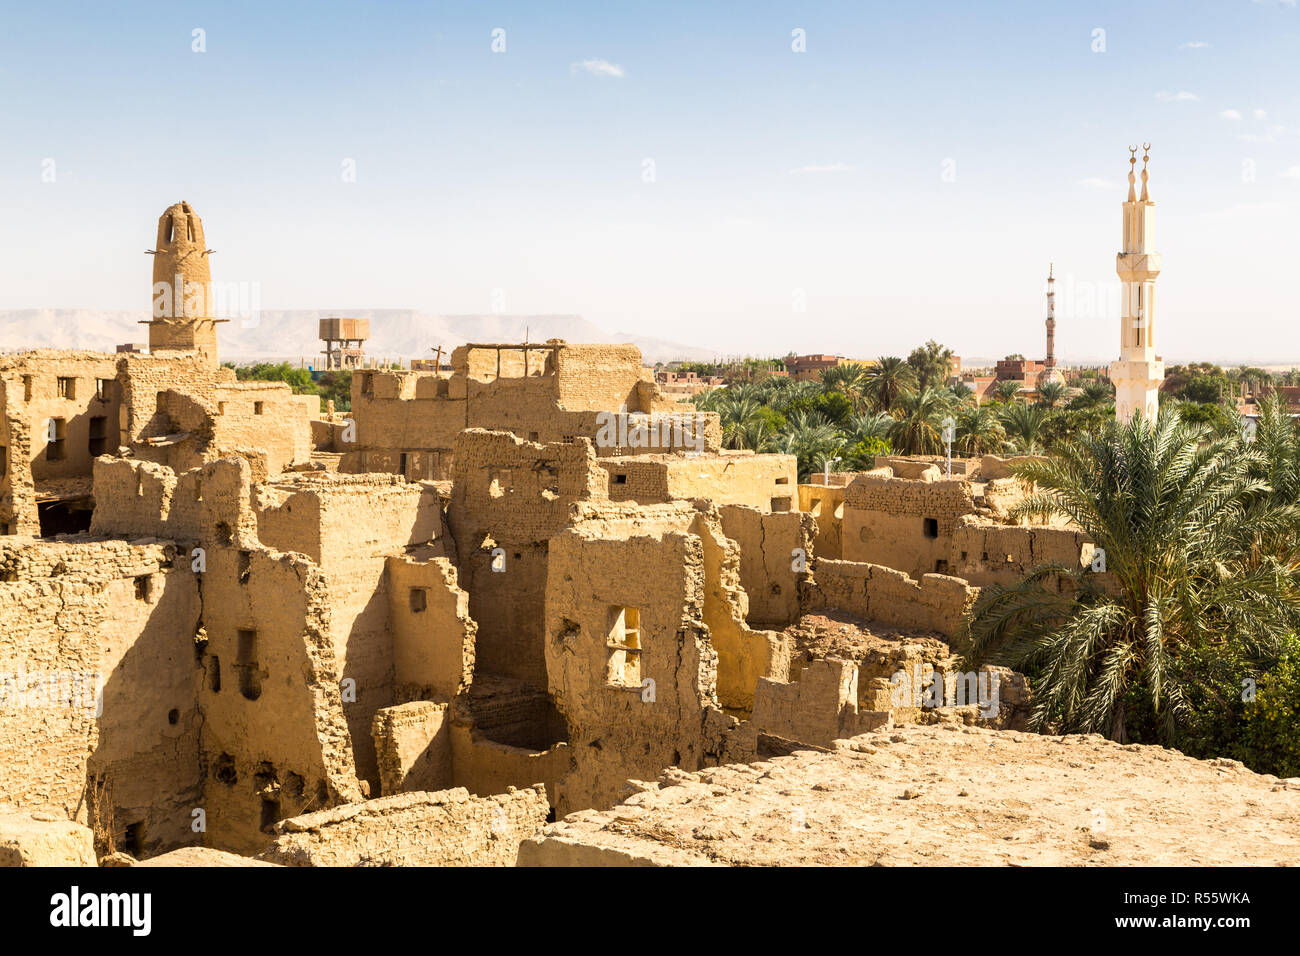 Oasis. Ruines de l'ancienne ville arabe du Moyen-Orient construite de briques de boue, ancienne mosquée avec minaret. Al Qasr, Dakhla Oasis, désert de l'Ouest, l'Egypte, l'Afrique. Banque D'Images